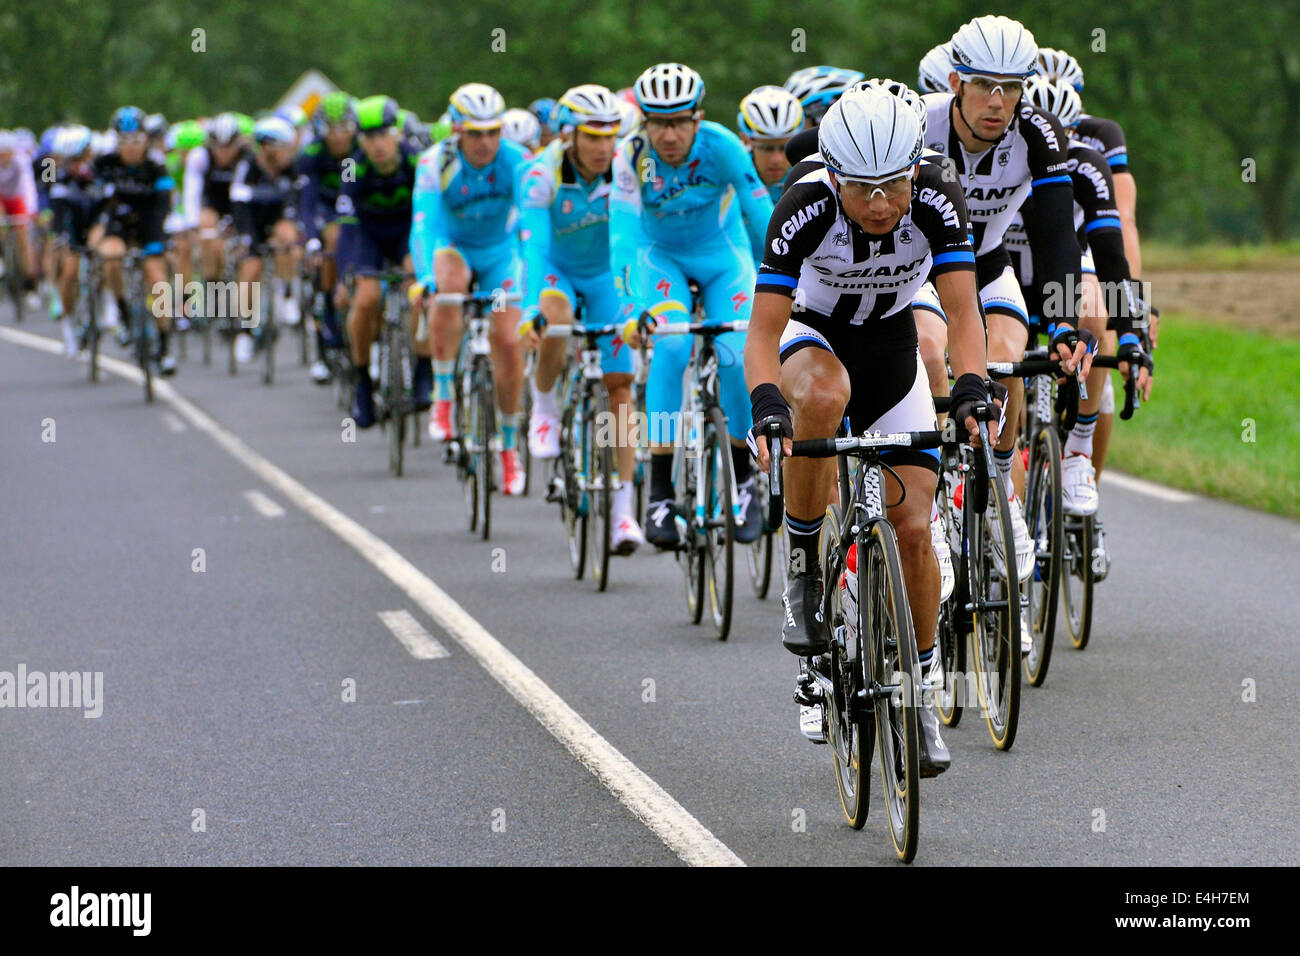 10.07.2014. Arras à Reims, France. Tour de France en vélo, l'étape 6. Géant de l'équipe - Shimano Banque D'Images